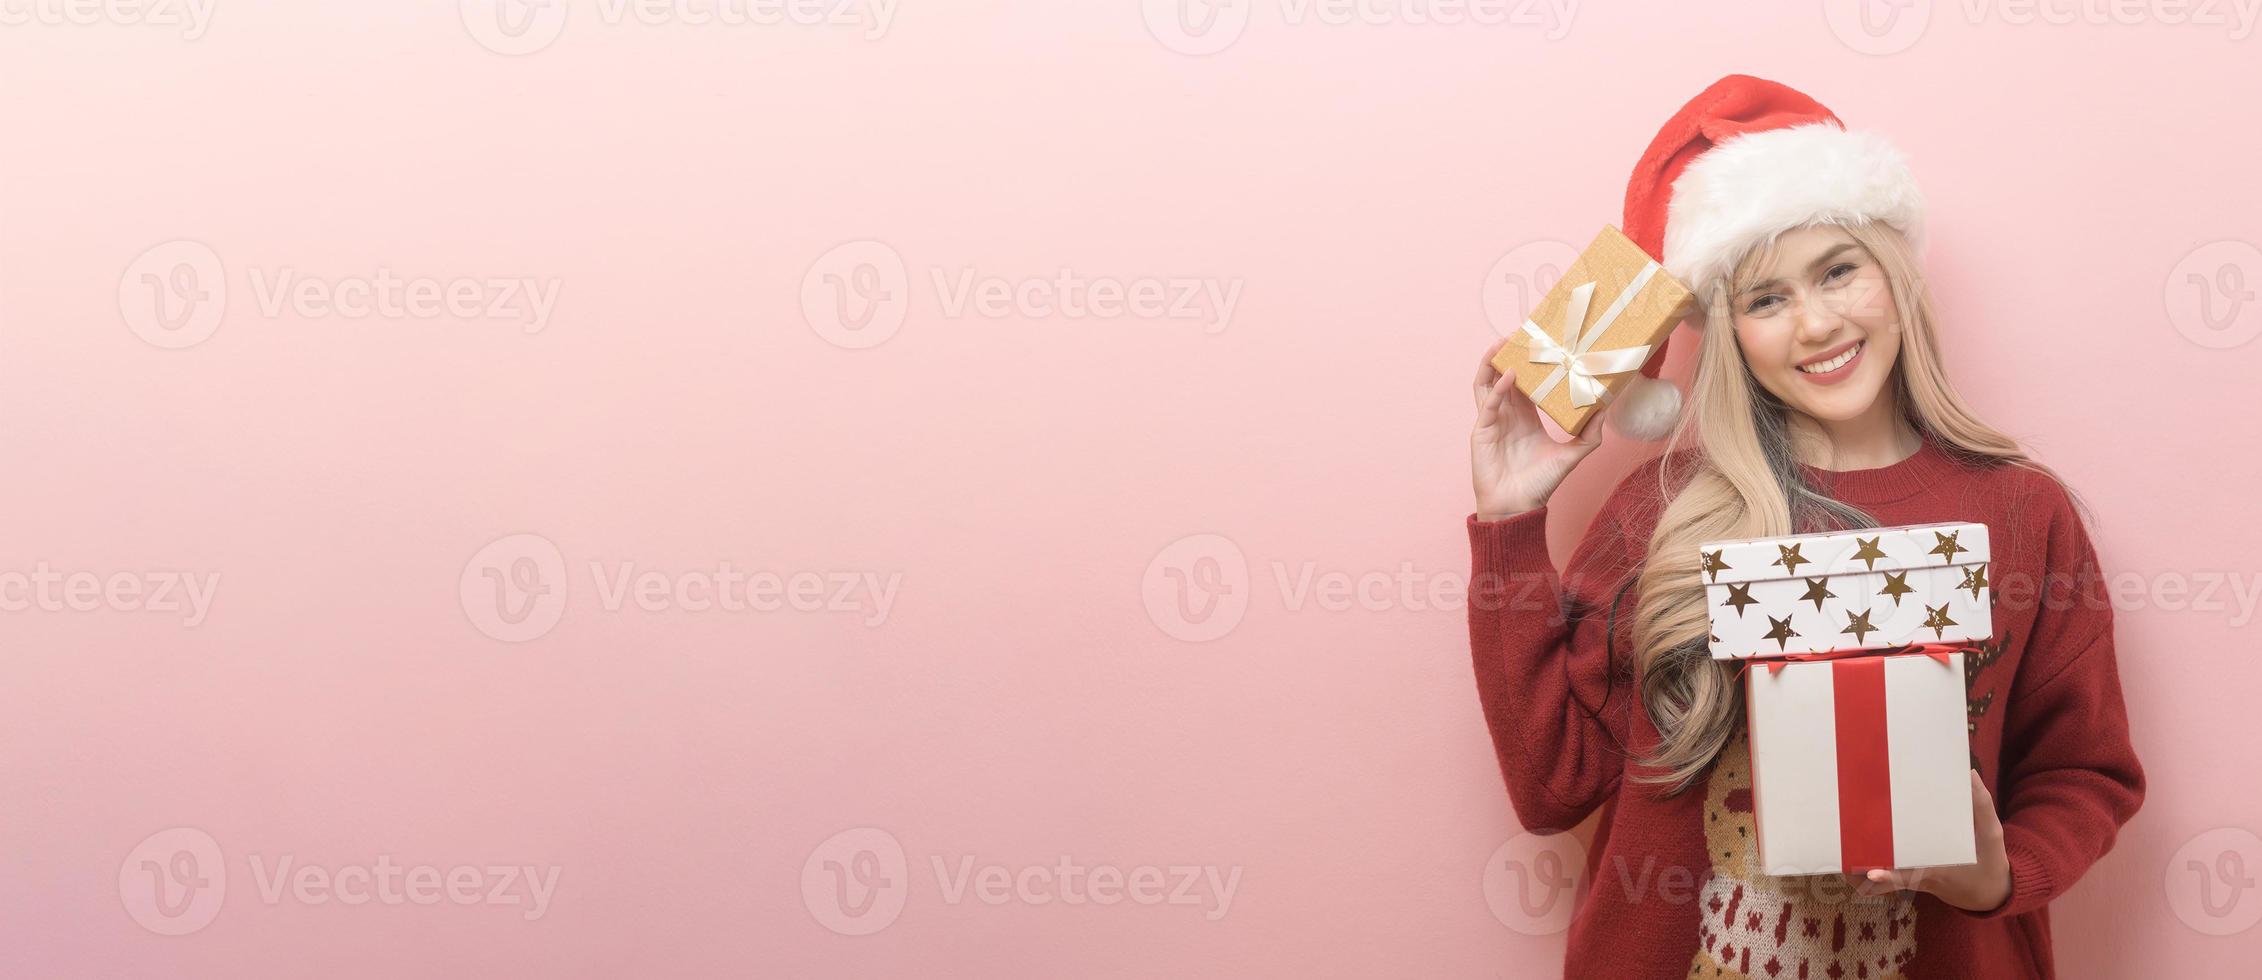 retrato de una joven caucásica feliz con sombrero de santa claus con caja de regalo sobre fondo rosa foto